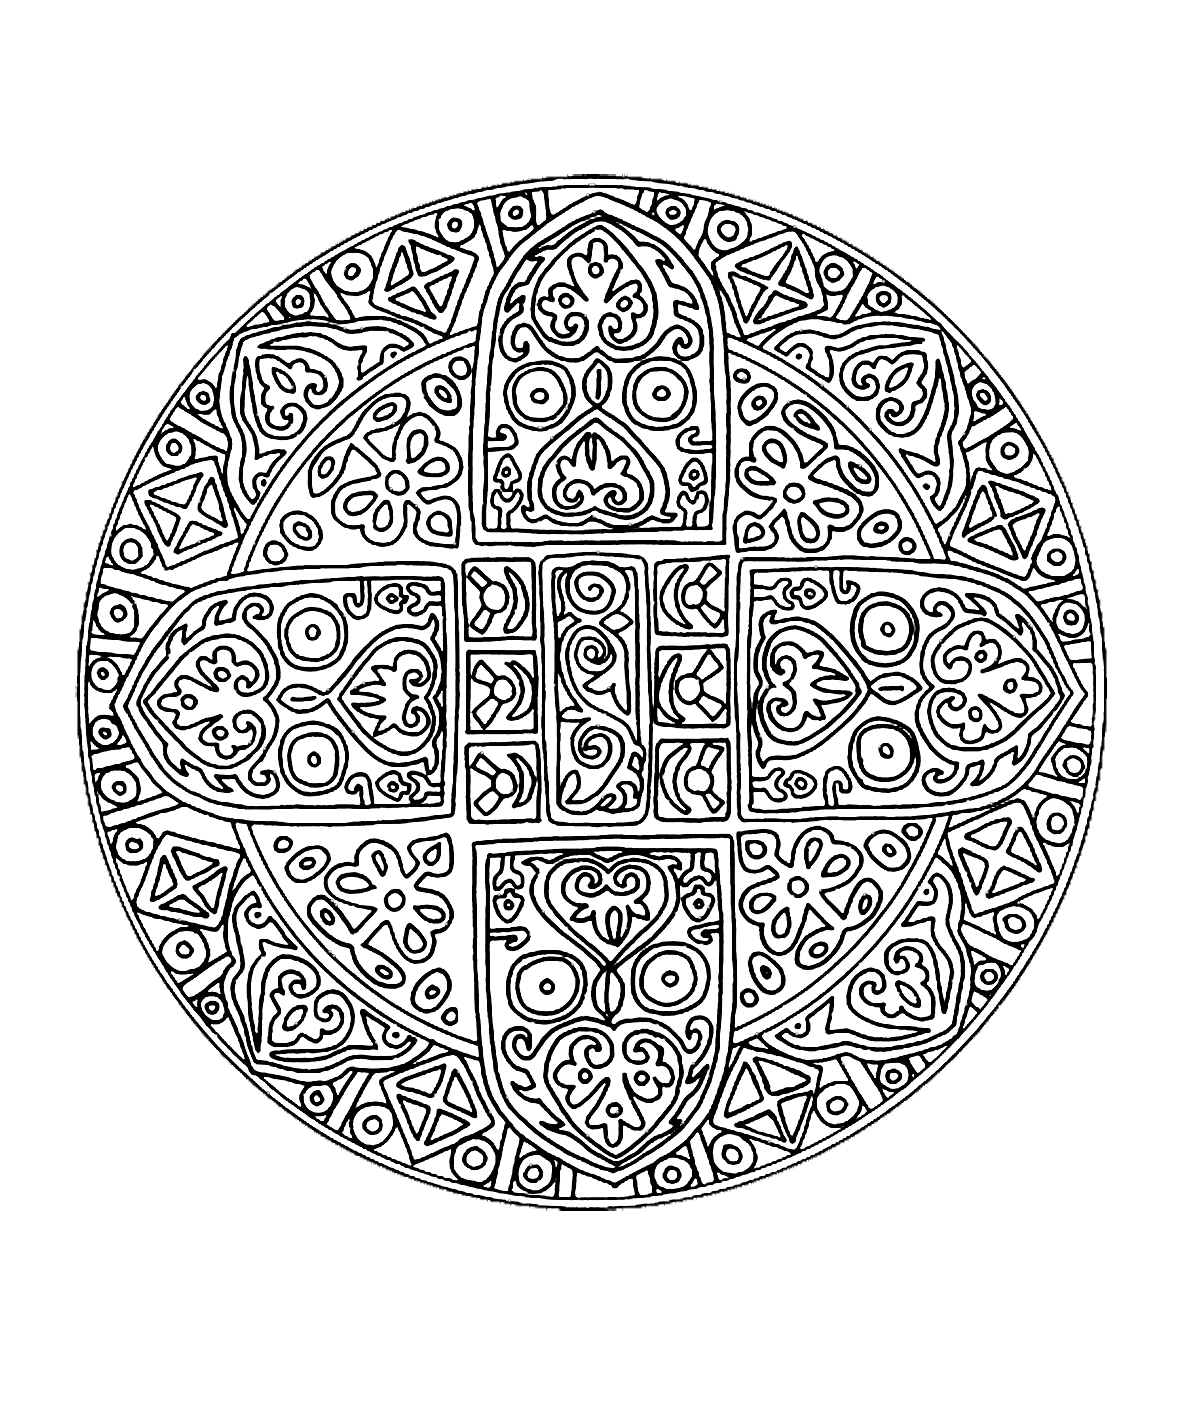 Joli mandala avec spirale donnant une impression de graphisme avec une très jolie fleur qui prend l'intégralité du dessin. Assez compliqué à colorier.